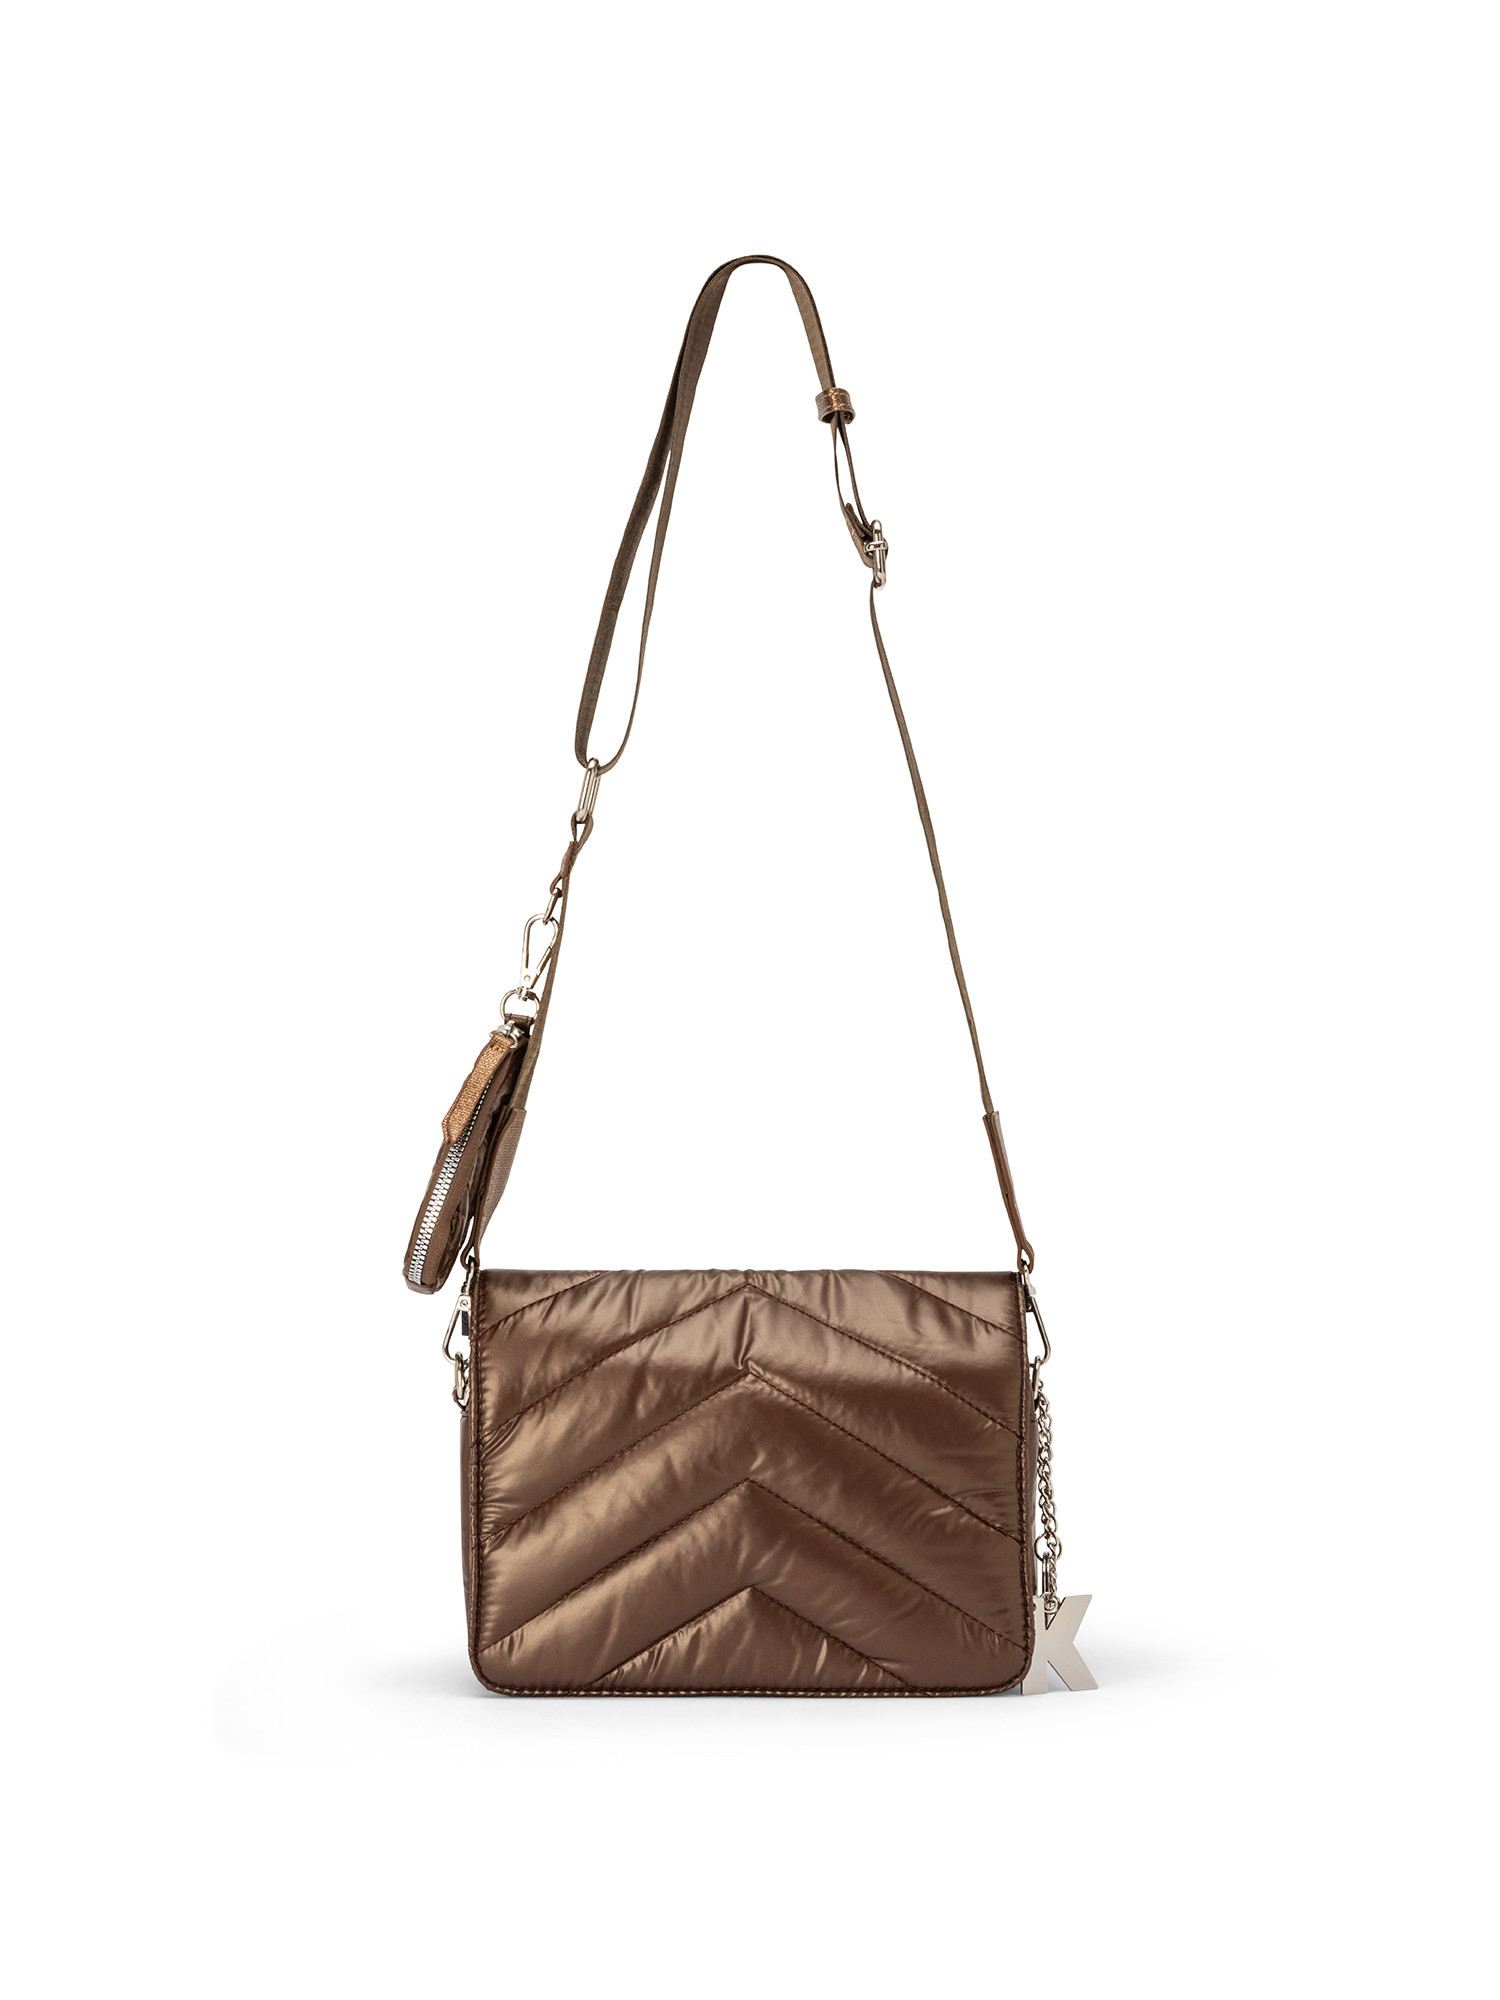 Koan - Nylon shoulder bag, Brown, large image number 0